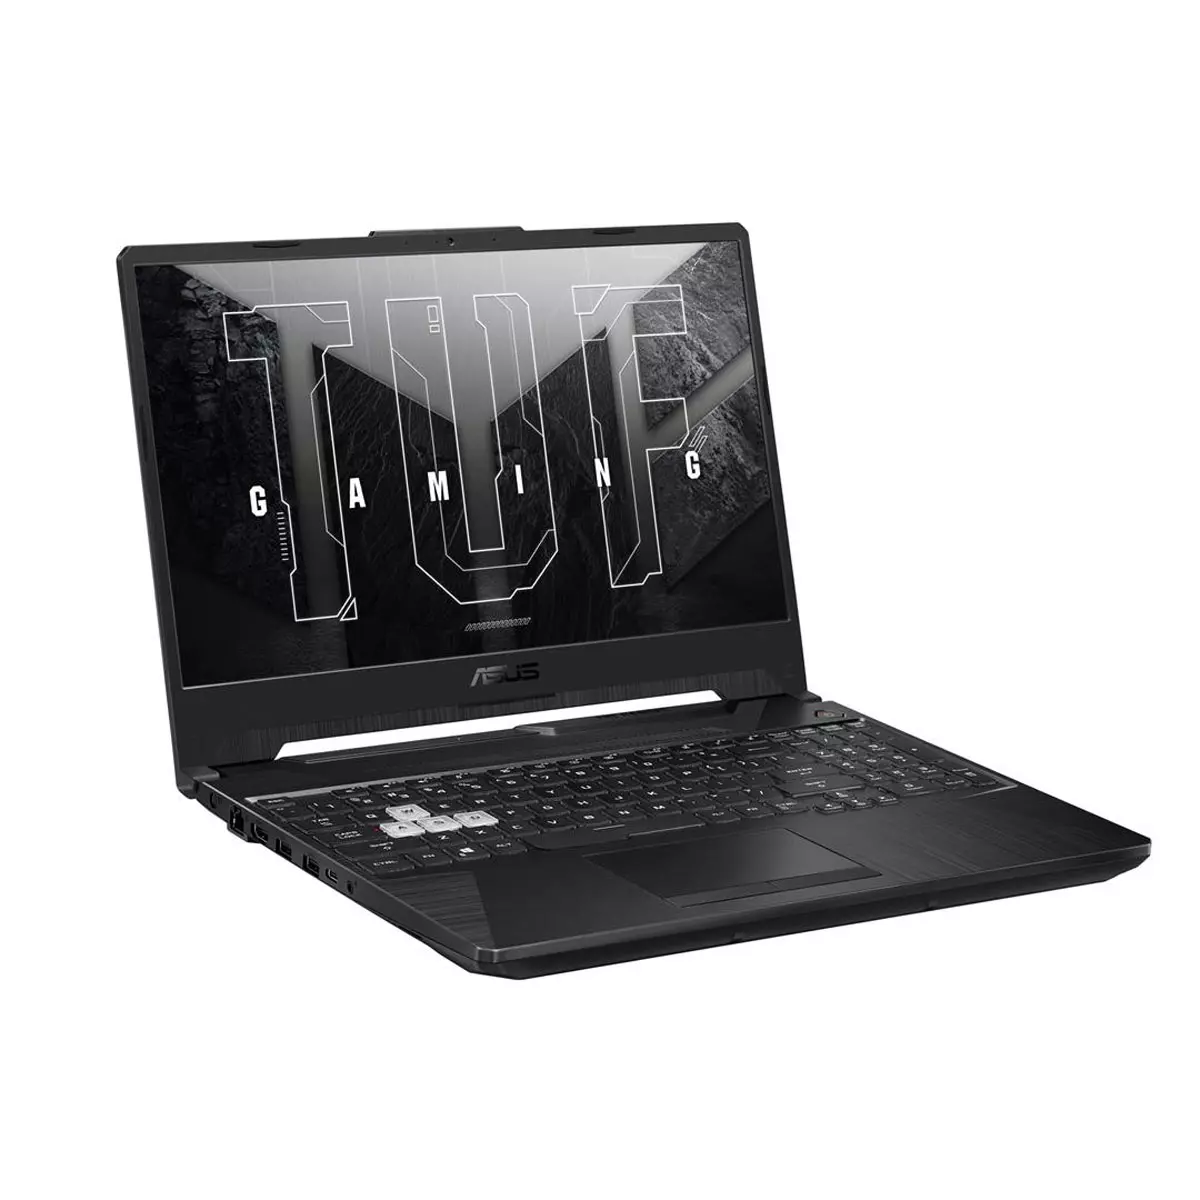 Asus TUF Gaming FX506HE-HN012 Gamer Laptop 15.6